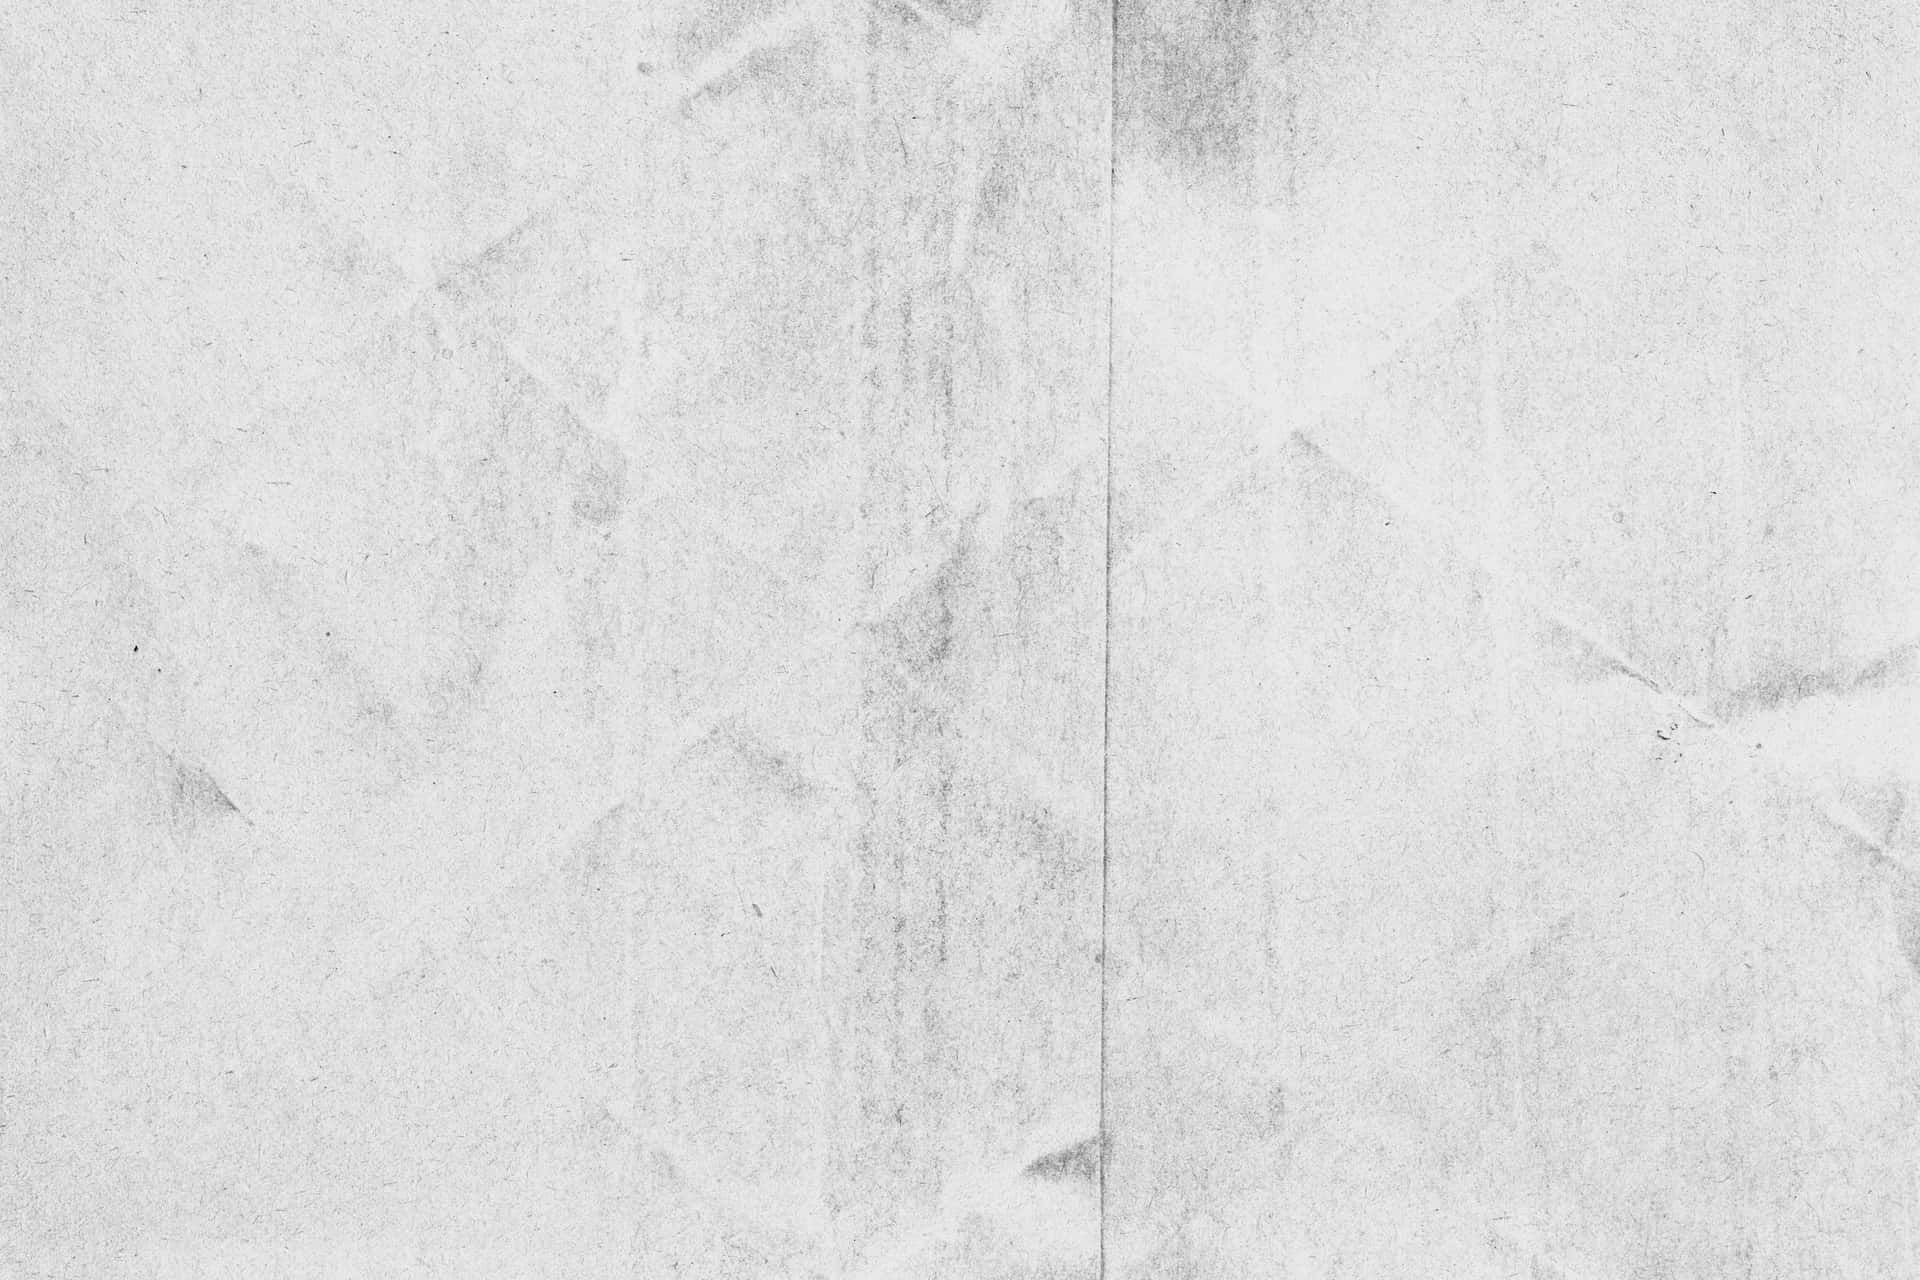 Imágenesde Textura De Impresión De Carbono Blanco.